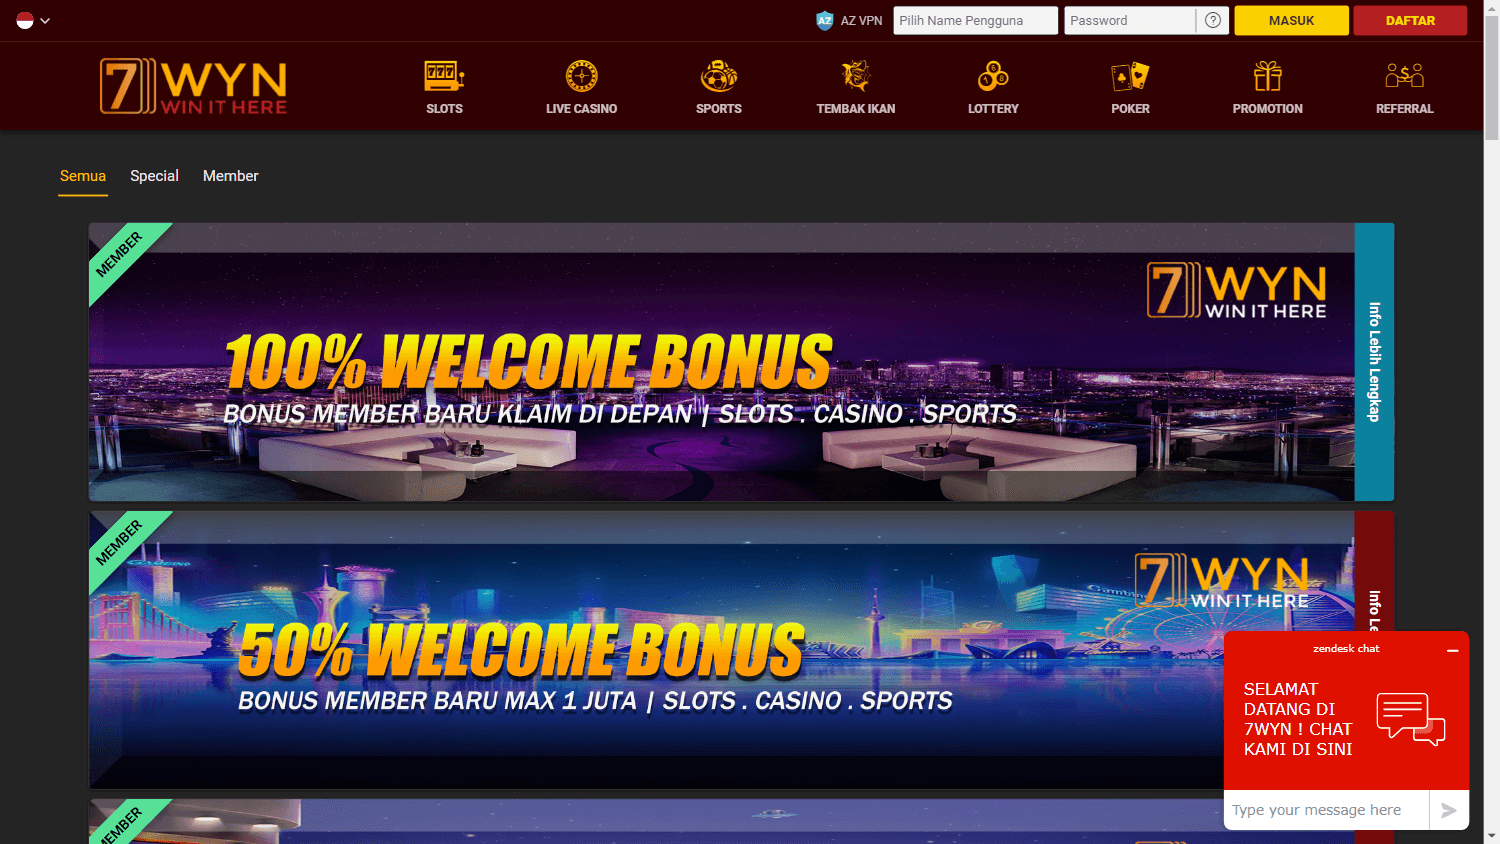 7wyn_casino_promotions_desktop